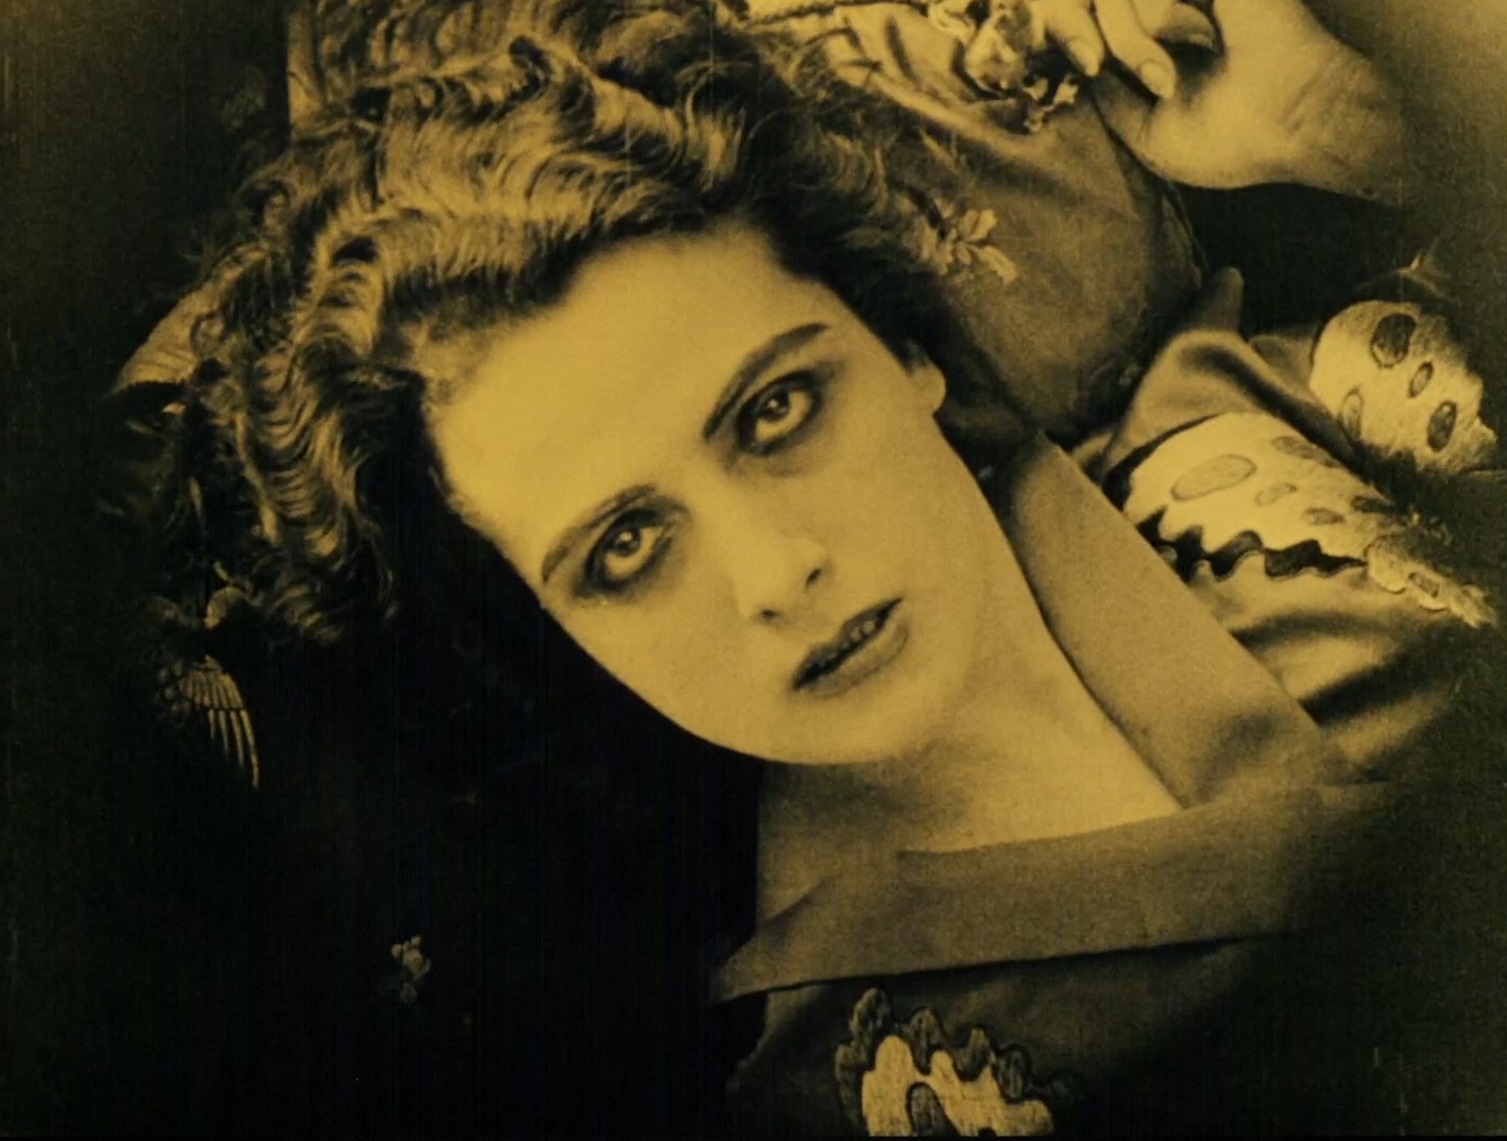 Francesca Bertini, La serpe, 1920